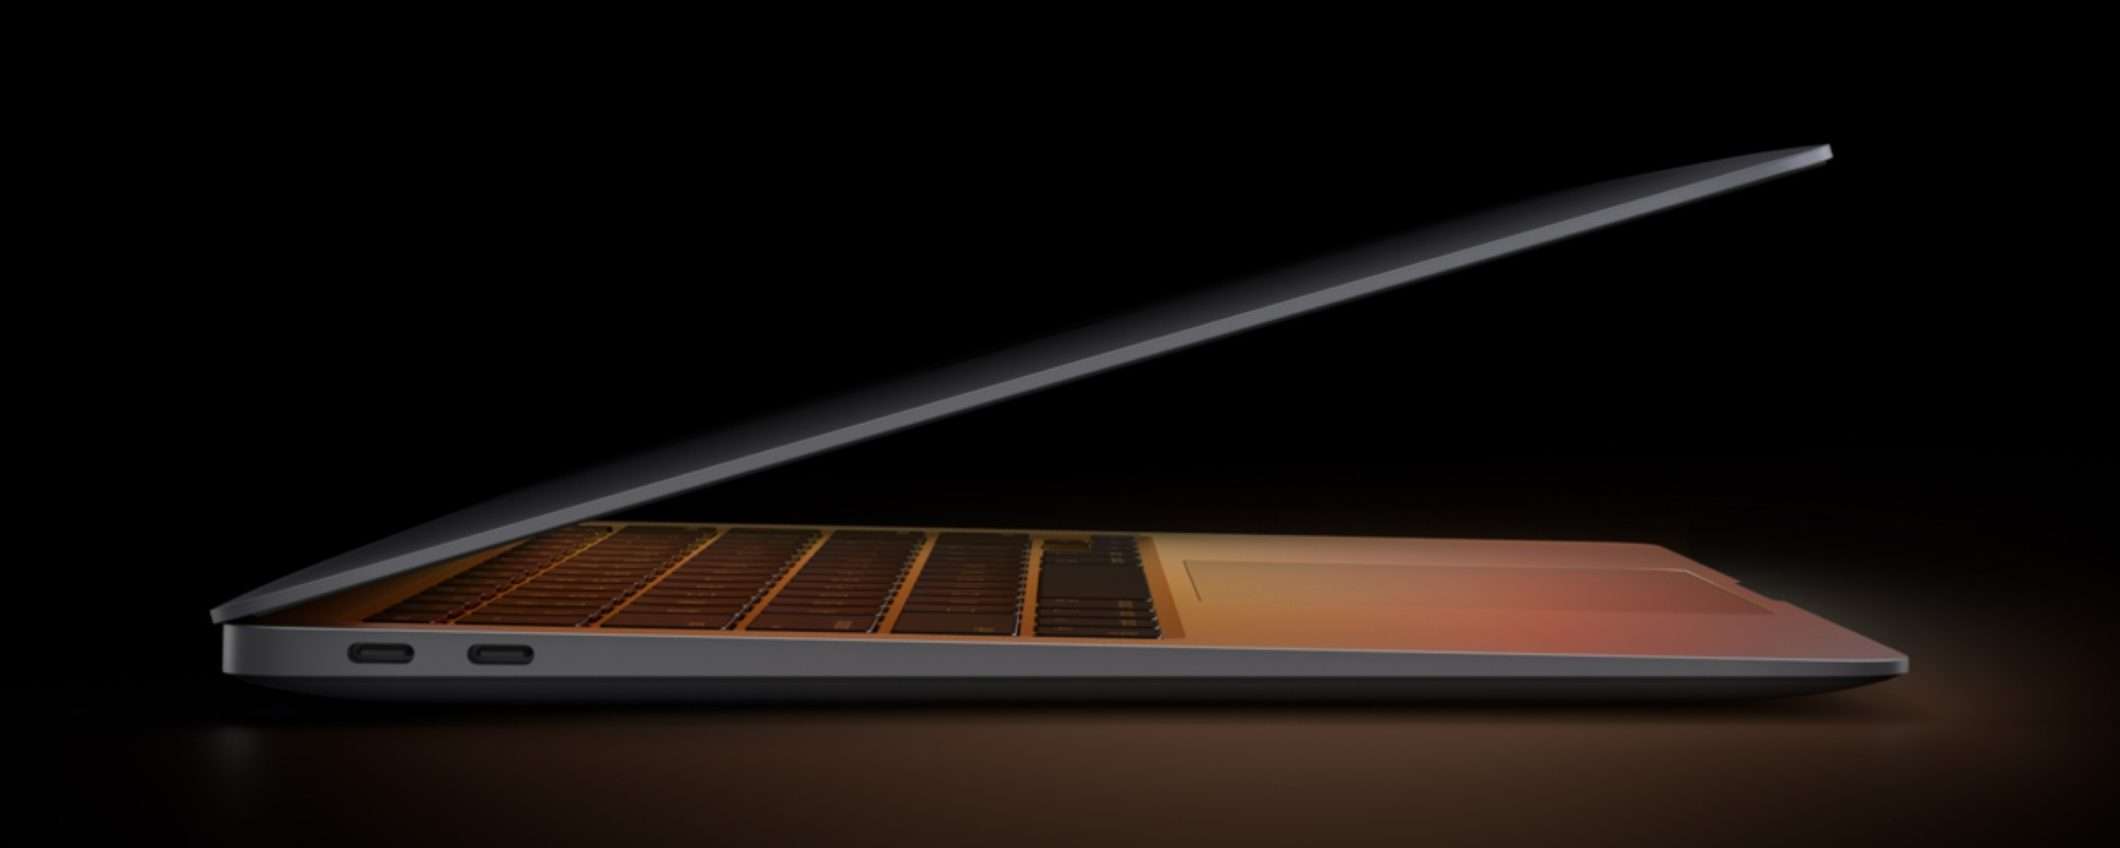 MacBook Air M1 è sempre il best buy tra i notebook con QUEST'OFFERTA